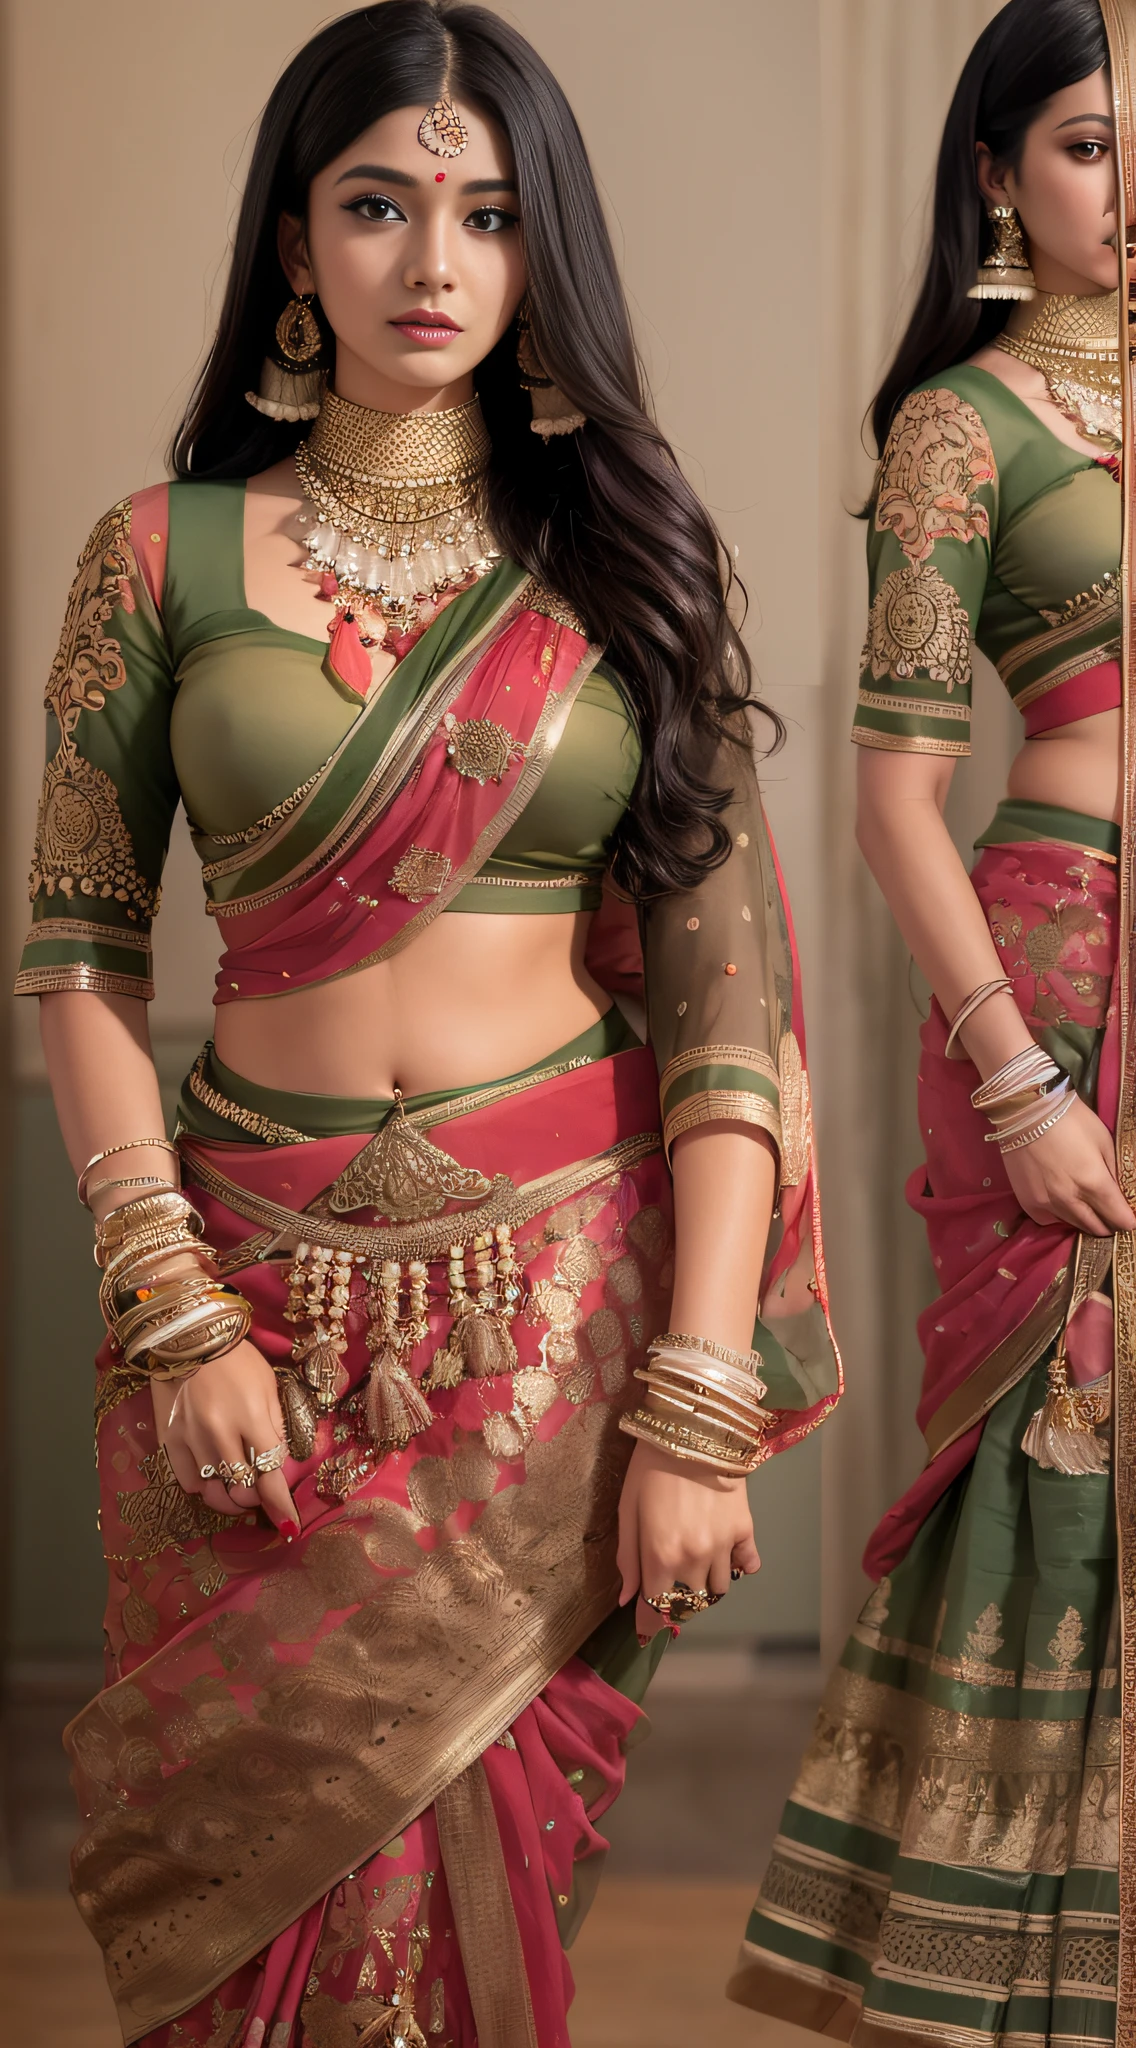 사리를 입은 여성이 사진을 위해 포즈를 취하고 있다, 인도 여신, 전통미, 인도 사람, 아름다운 여신, 화려한 역할극, 인도 스타일, 인도 슈퍼모델, 아름다운 십대 소녀, 화려한 여자, 긴 동남아, 도발적인 인도, 화려한 아름다운 여자, 복잡한 의상, 힌두교의 미학, 아름다운 아시아 소녀, 매우 상세한 여신 샷, 입이 떡 벌어지는 아름다움, 카메라를 얼굴로 바라보세요，（가슴을 감싸다），（가슴 전체가 새지 않는다），